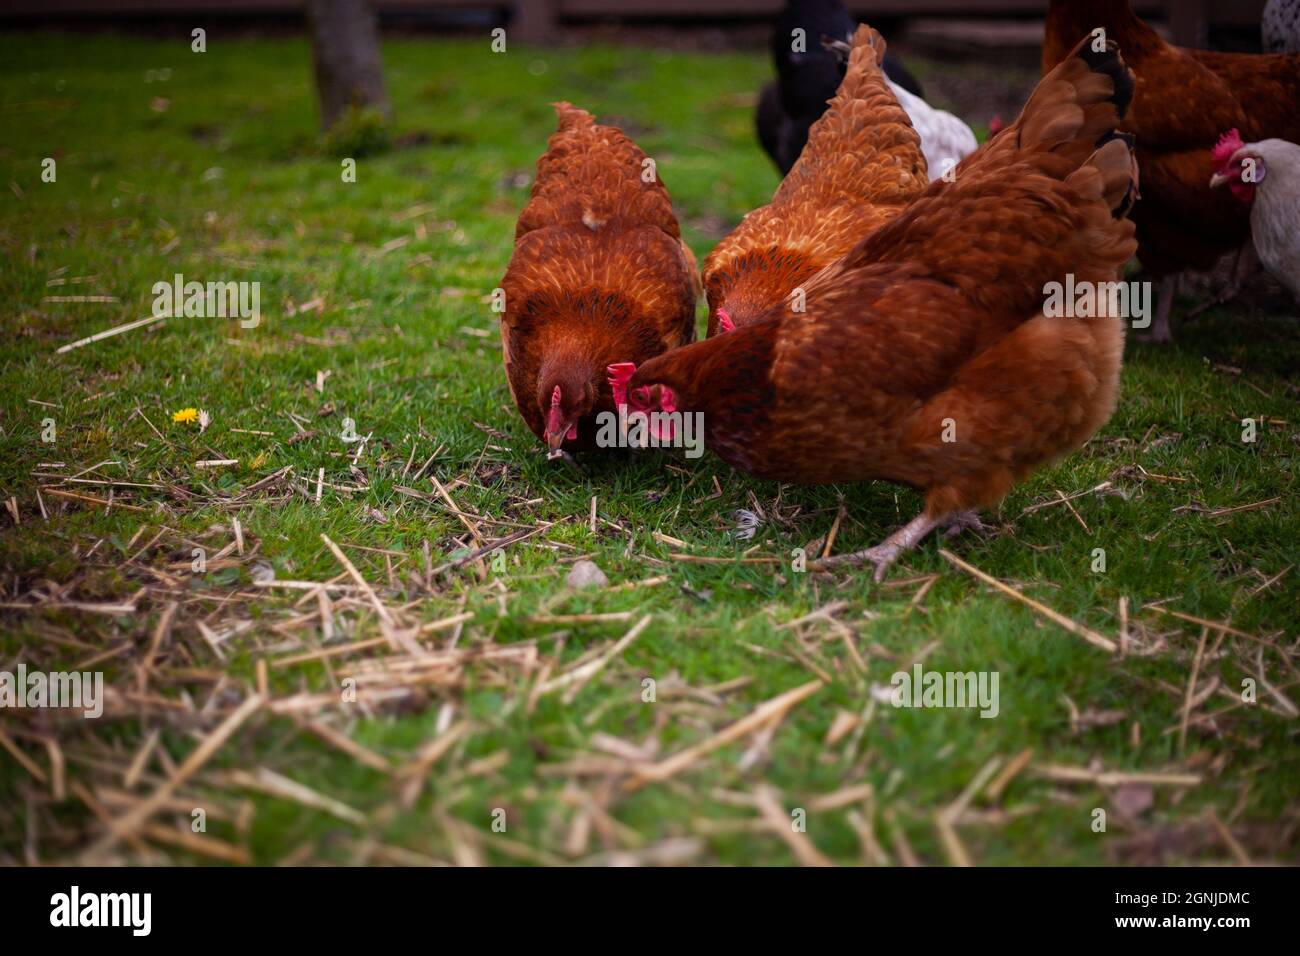 Photo de près de trois poulets bruns se nourrissant et à la recherche de quelque chose sur le sol dans l'herbe avec d'autres poulets en arrière-plan dans une ferme Banque D'Images